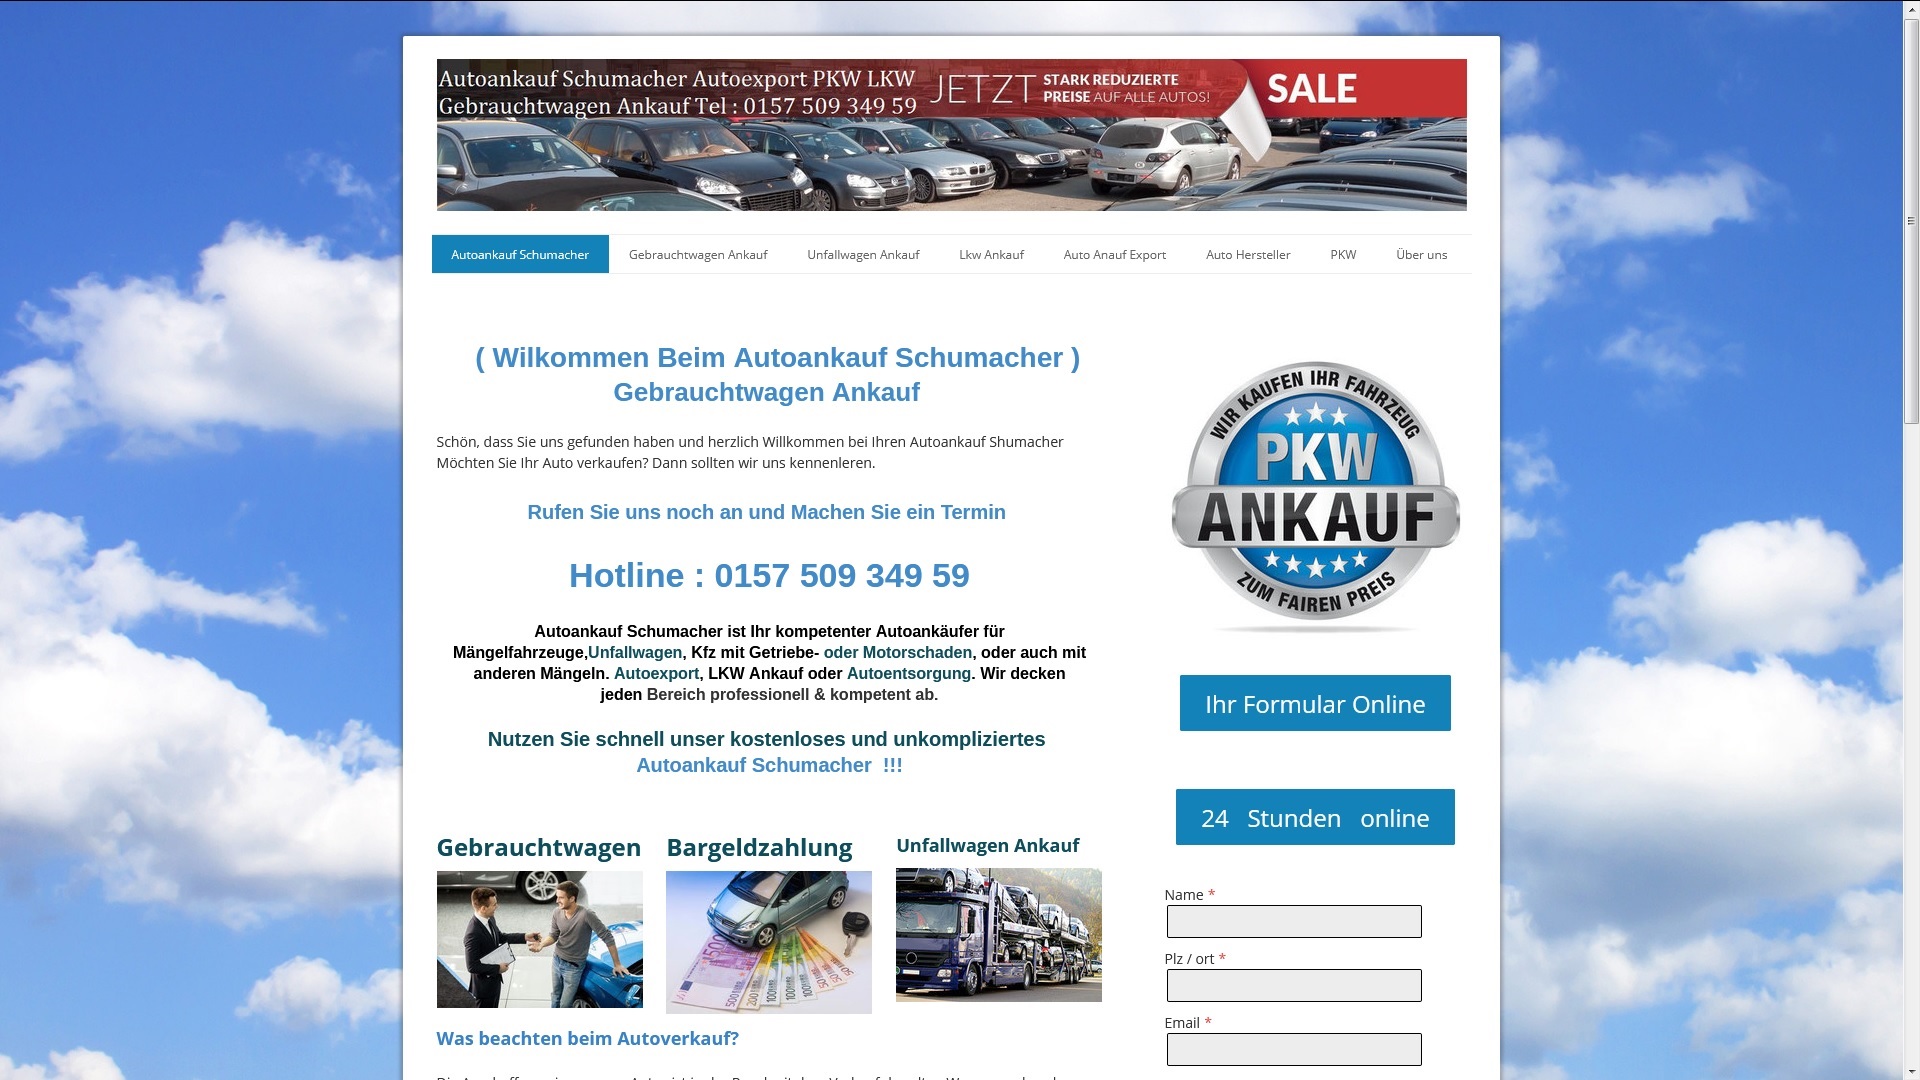 Autoankauf Schumacher | Autoankauf Gebrauchtwagen Ankauf in Rostock